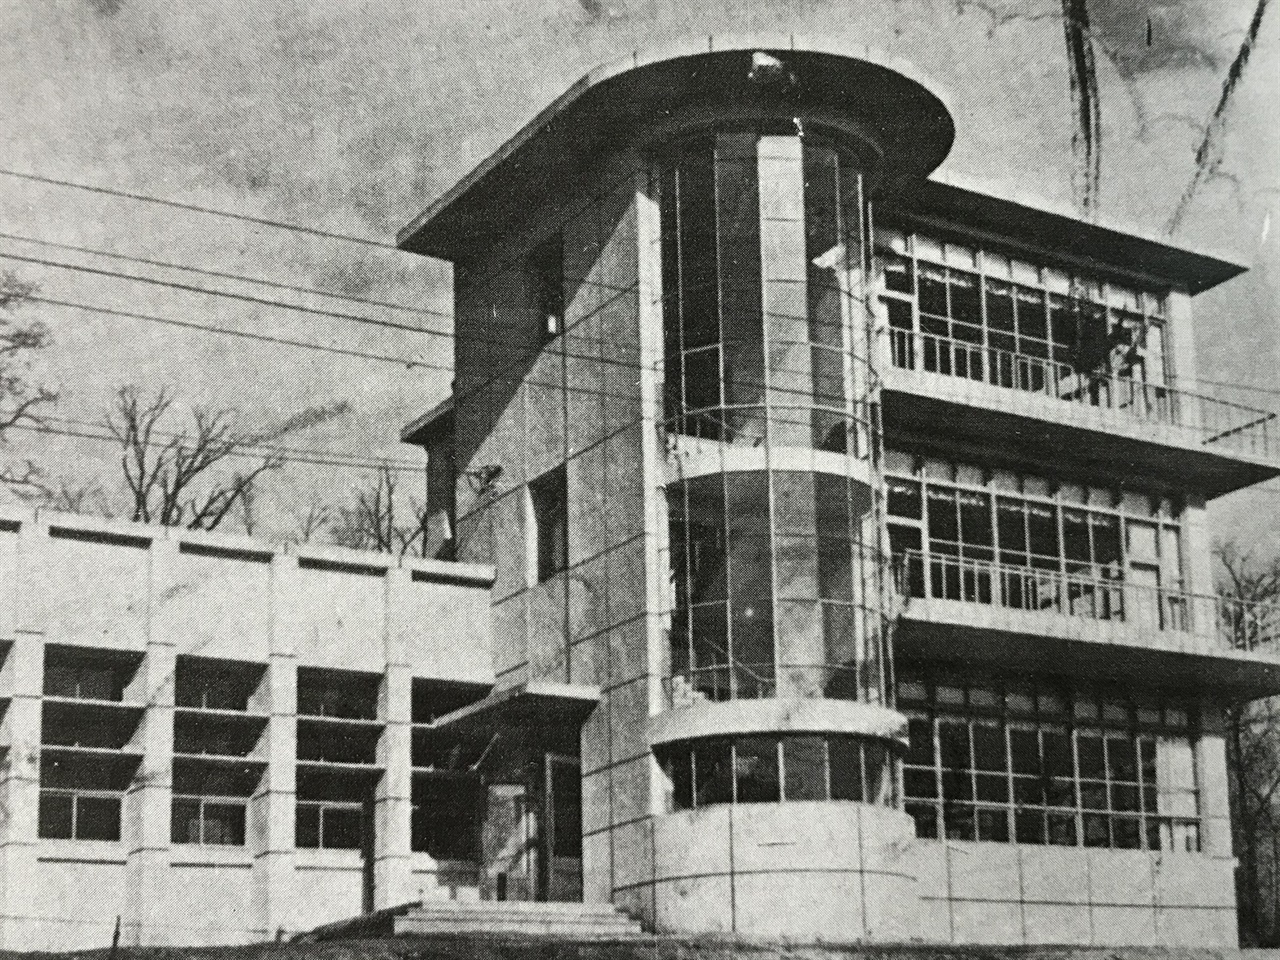 대한민국 정부 수립 후 처음으로 문을 연 학교도서관은 진주여고 도서관이다. 진주여고는 1952년 3월 도서관을 개관했으나 독립 건물로 도서관을 마련하진 않았다. 제물포고 도서관은 해방 이후 ‘독립 건물’로 새로 지은 최초의 학교도서관으로 알려져 있다. 개관 당시 1층이었던 좌측 건물동은 1969년 증축해서 2층이 되었다. 